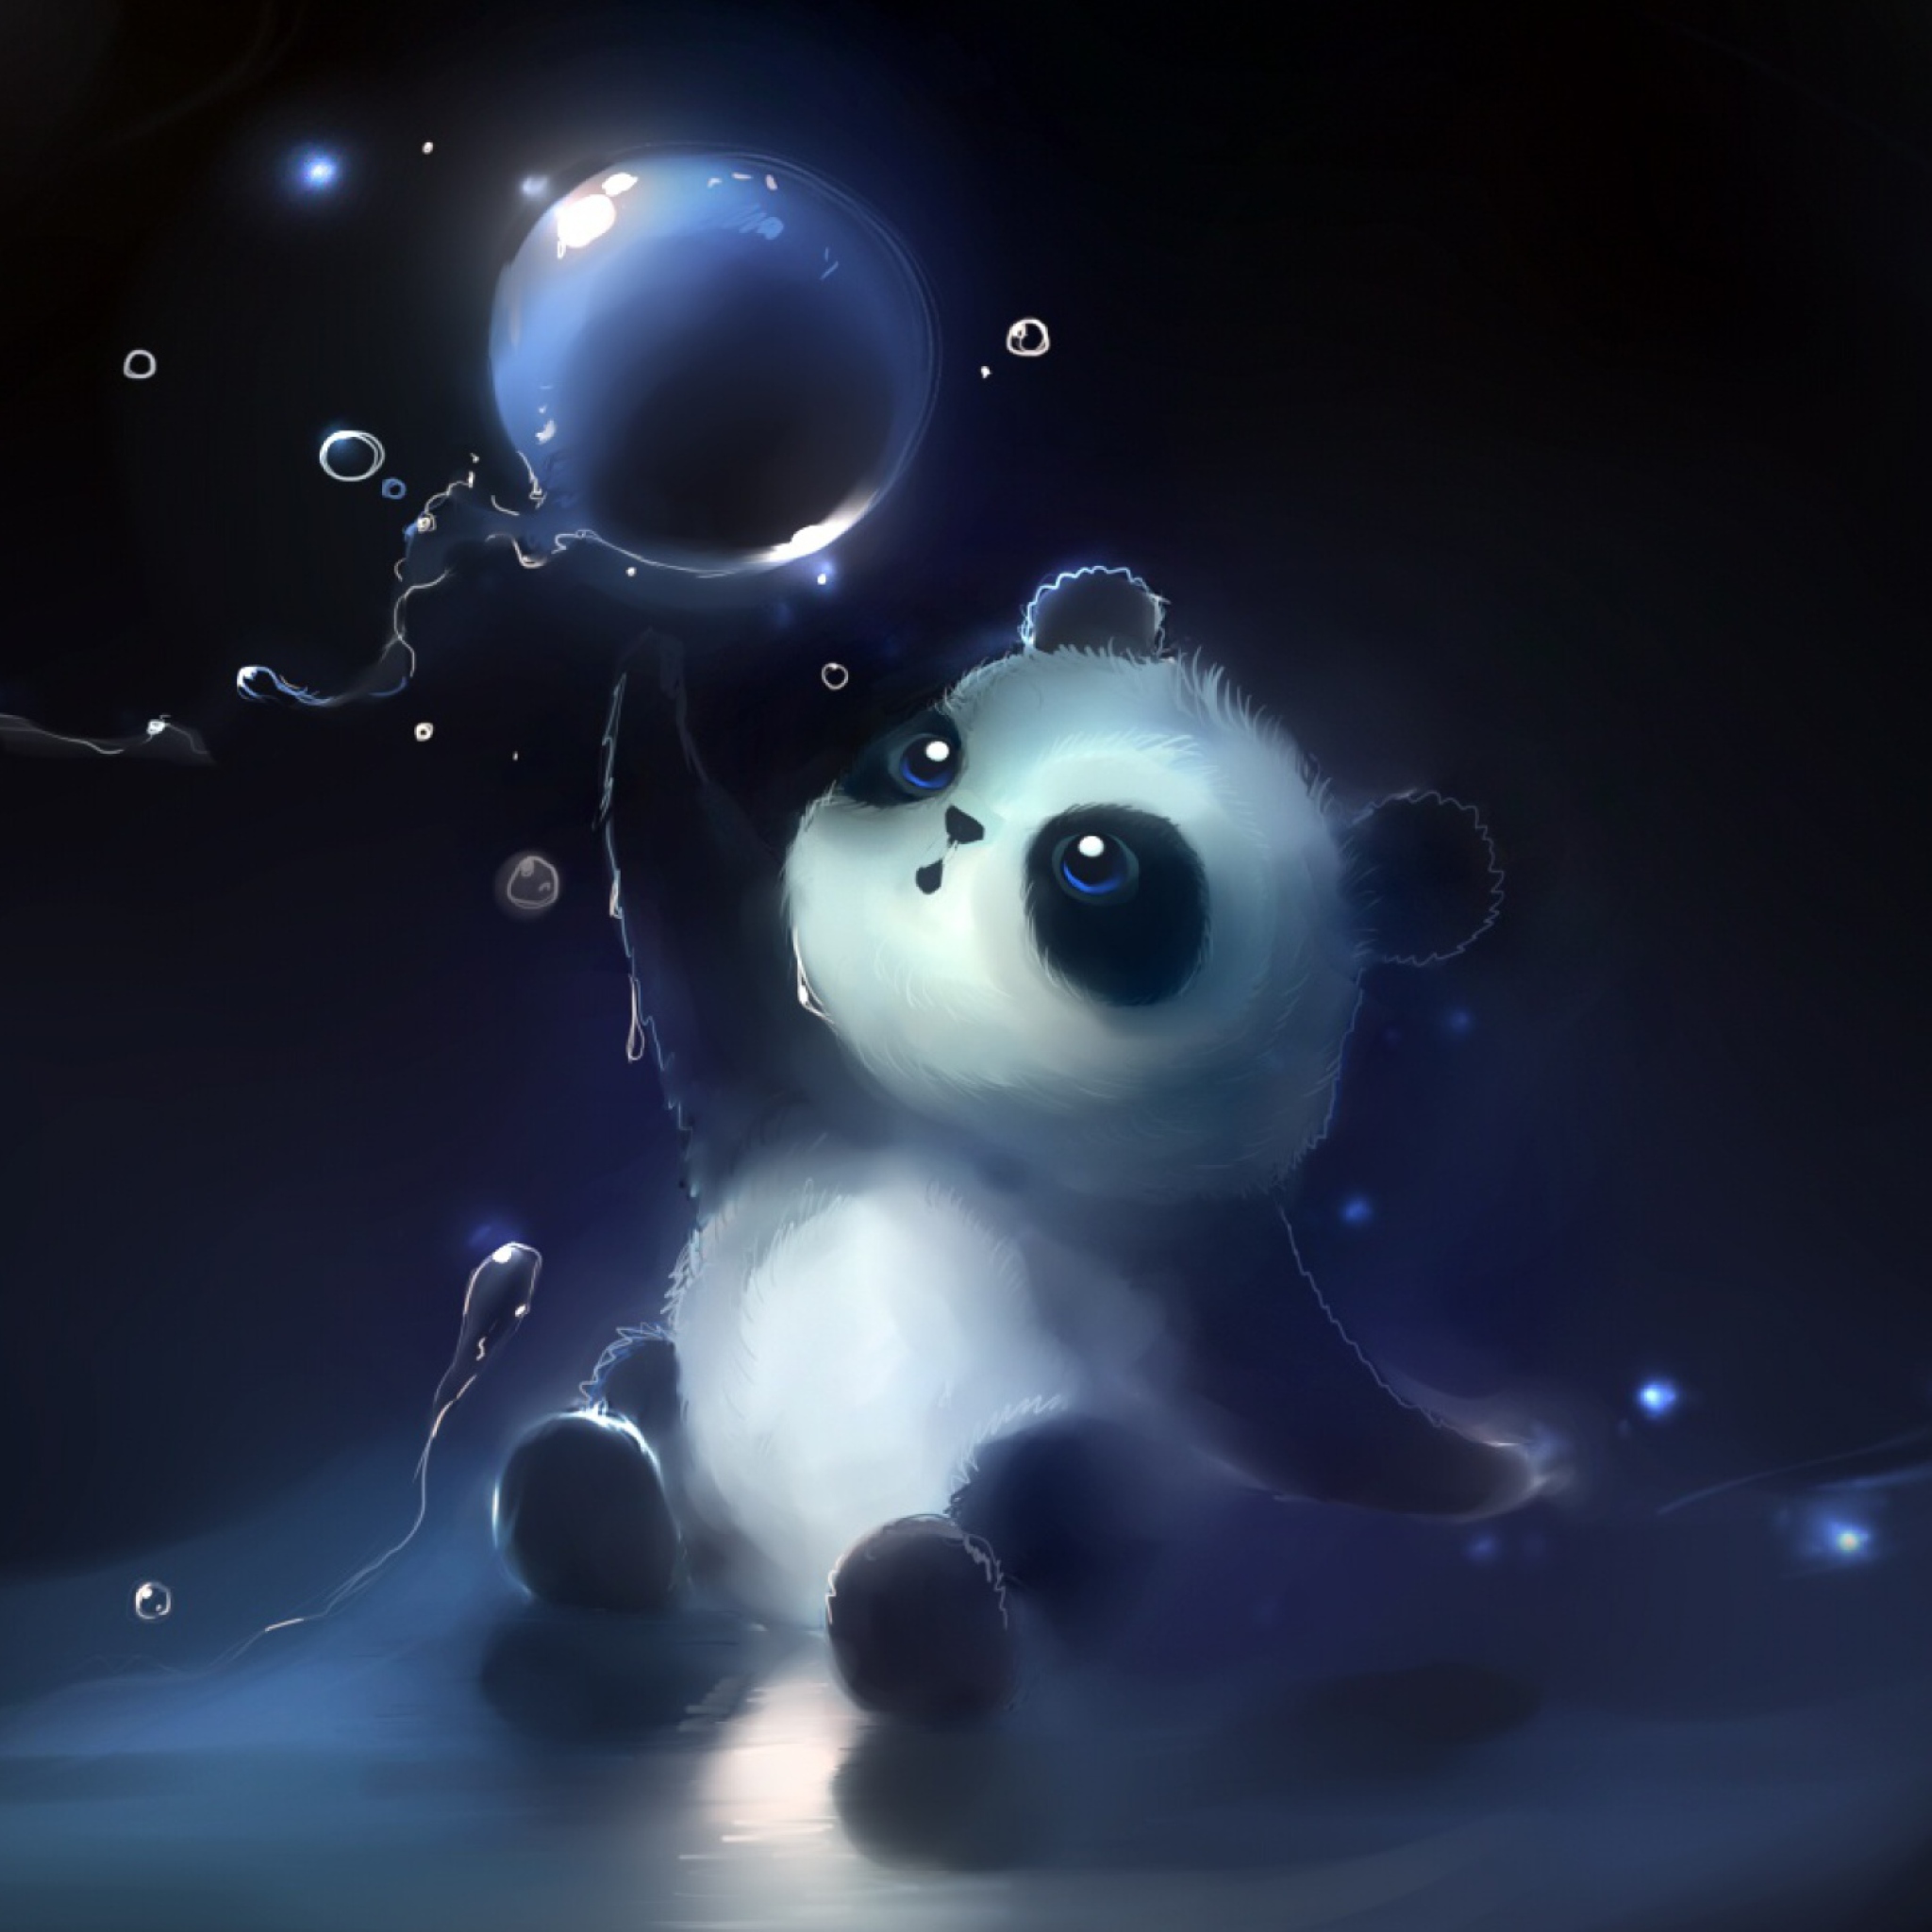 Cute Little Panda With Balloon wallpaper 2048x2048